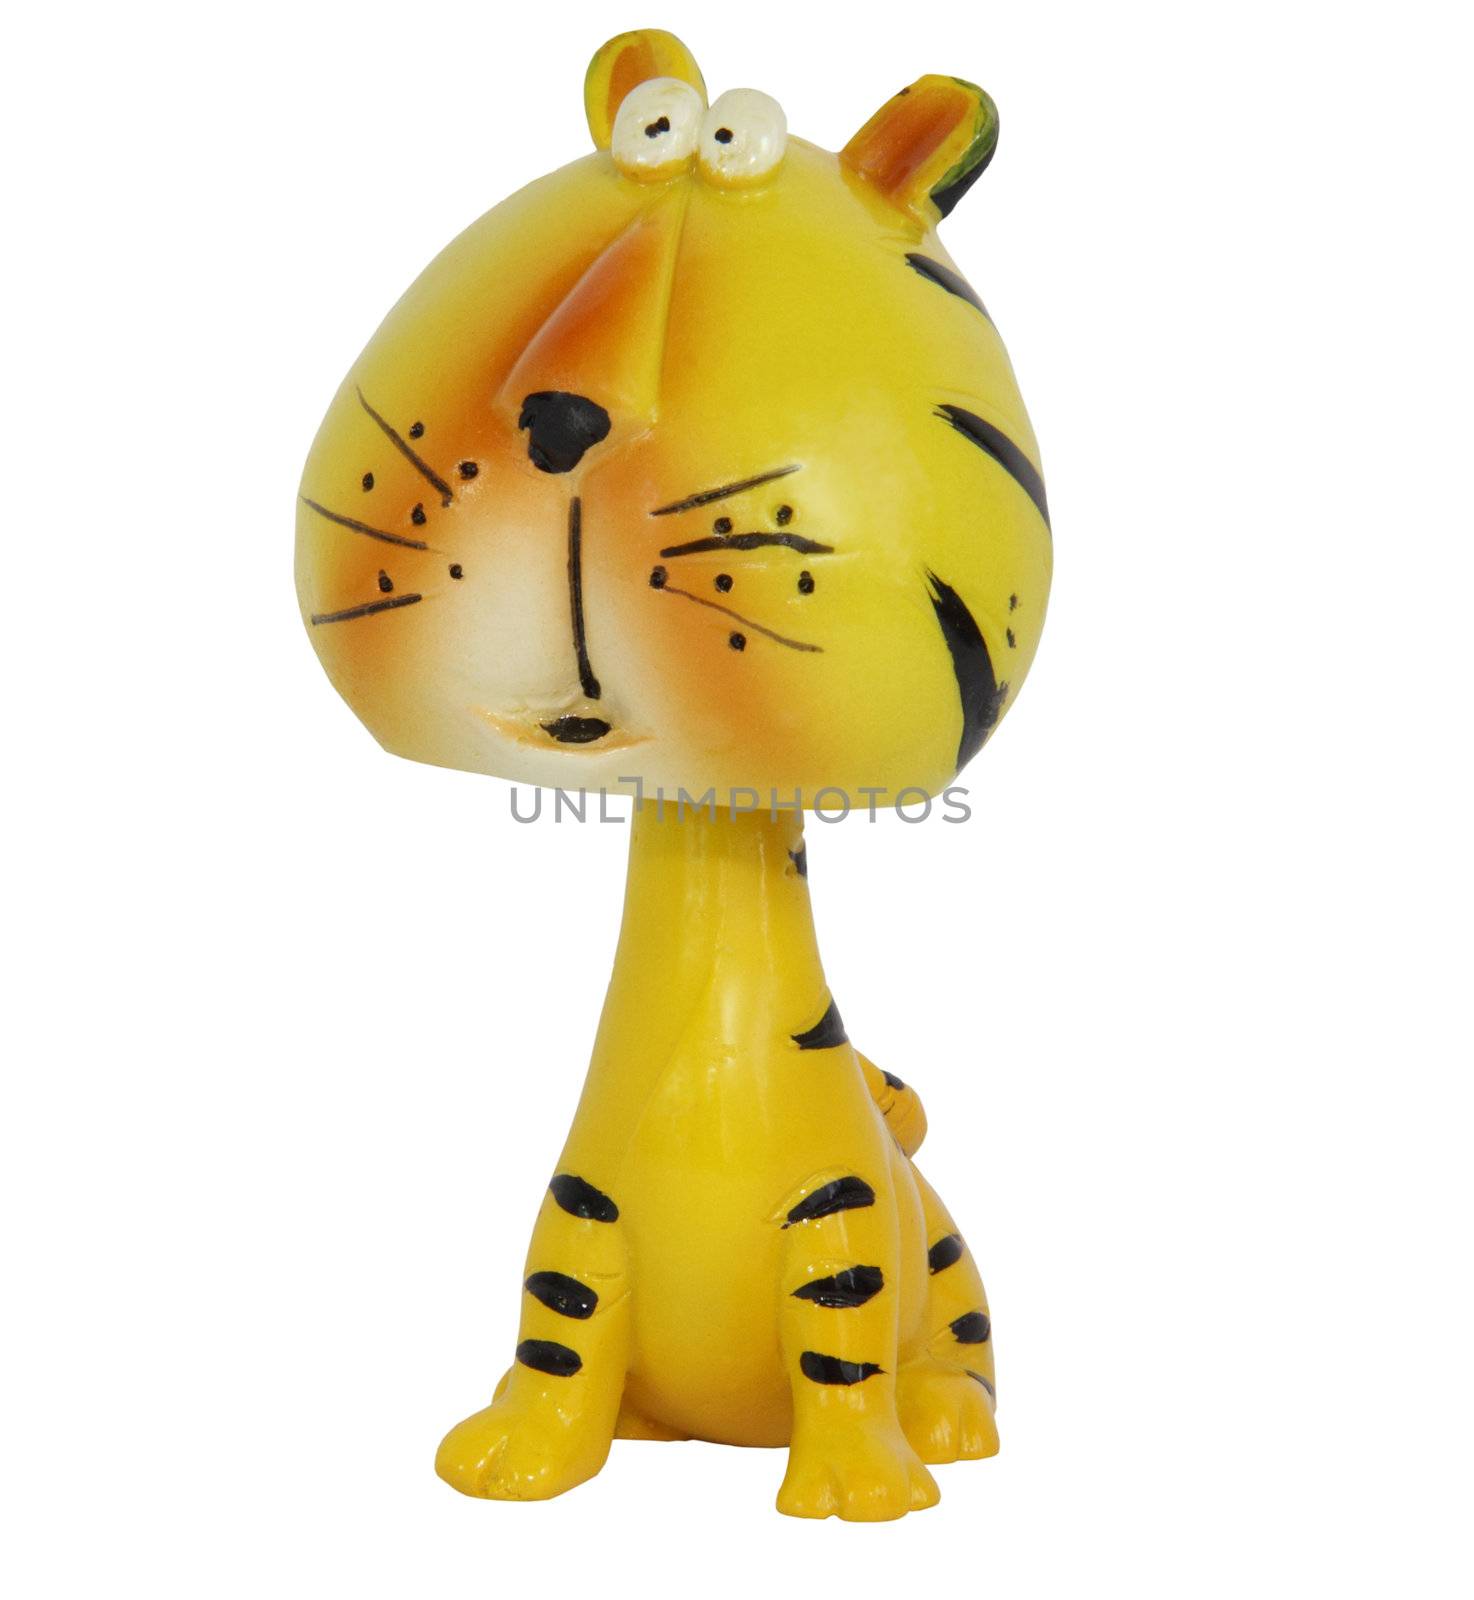 Toy tiger by vladnad